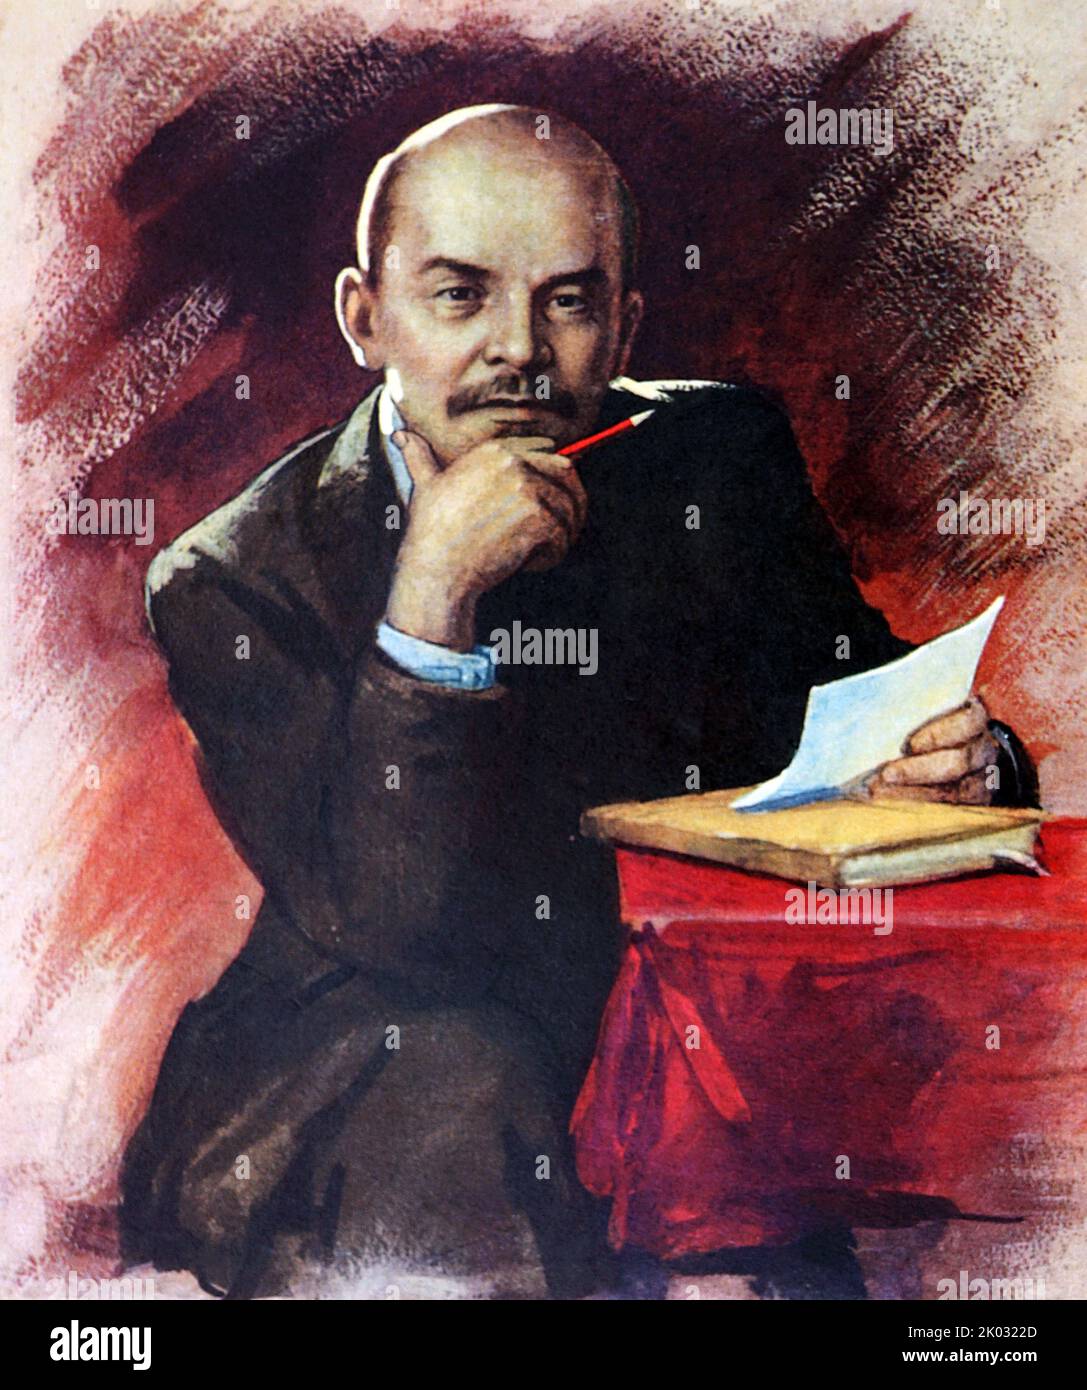 Vladimir Ilyich Lénine (1870 - 1924), révolutionnaire russe, politicien et théoricien politique. Il a été le premier et fondateur chef de gouvernement de la Russie soviétique de 1917 à 1924 et de l'Union soviétique de 1922 à 1924. Banque D'Images